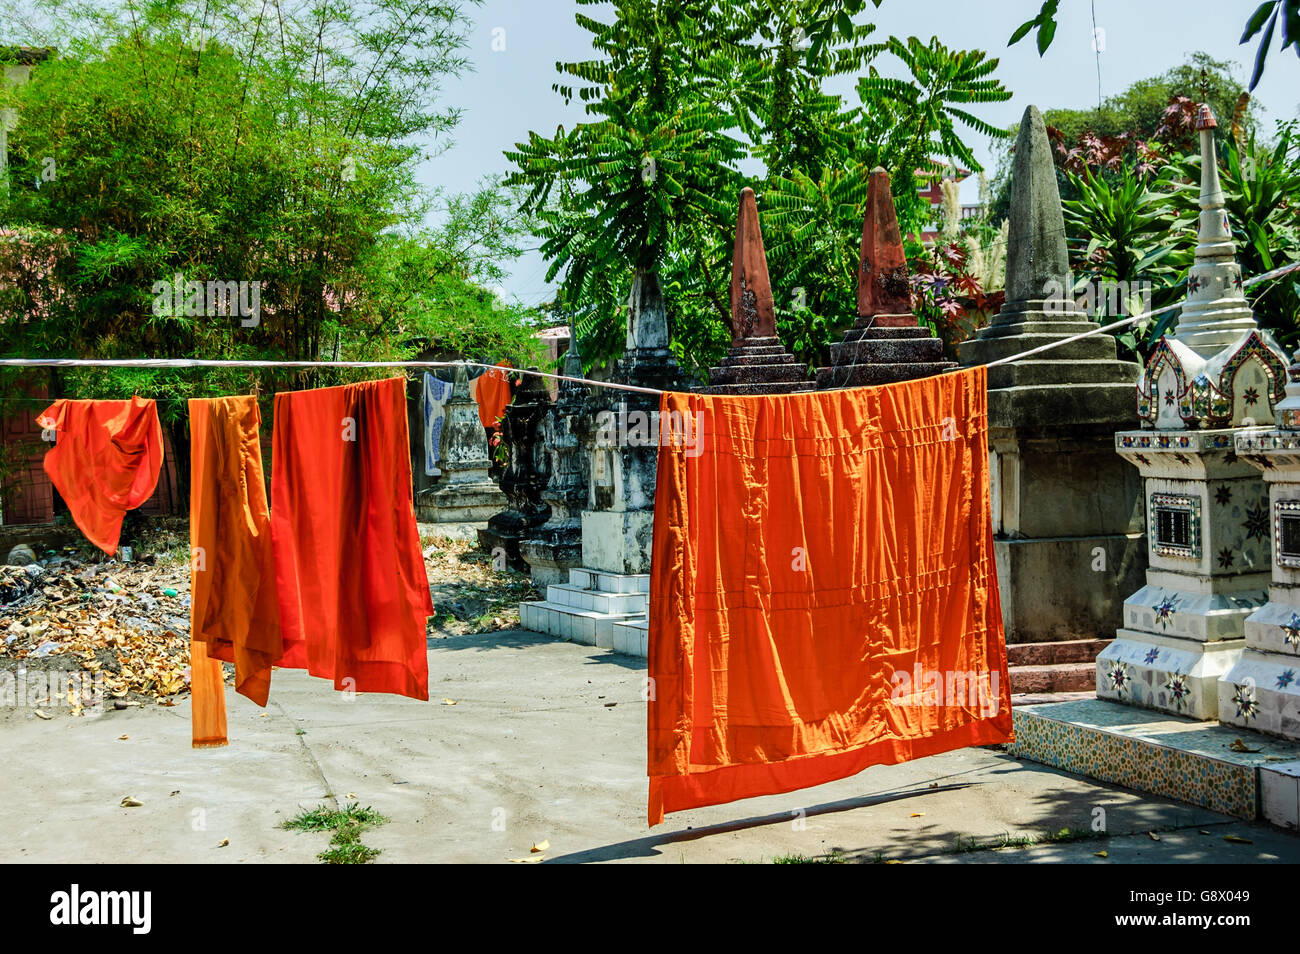 Los monjes budistas' batas colgadas a secar en el templo, en Vientiane, Laos Foto de stock